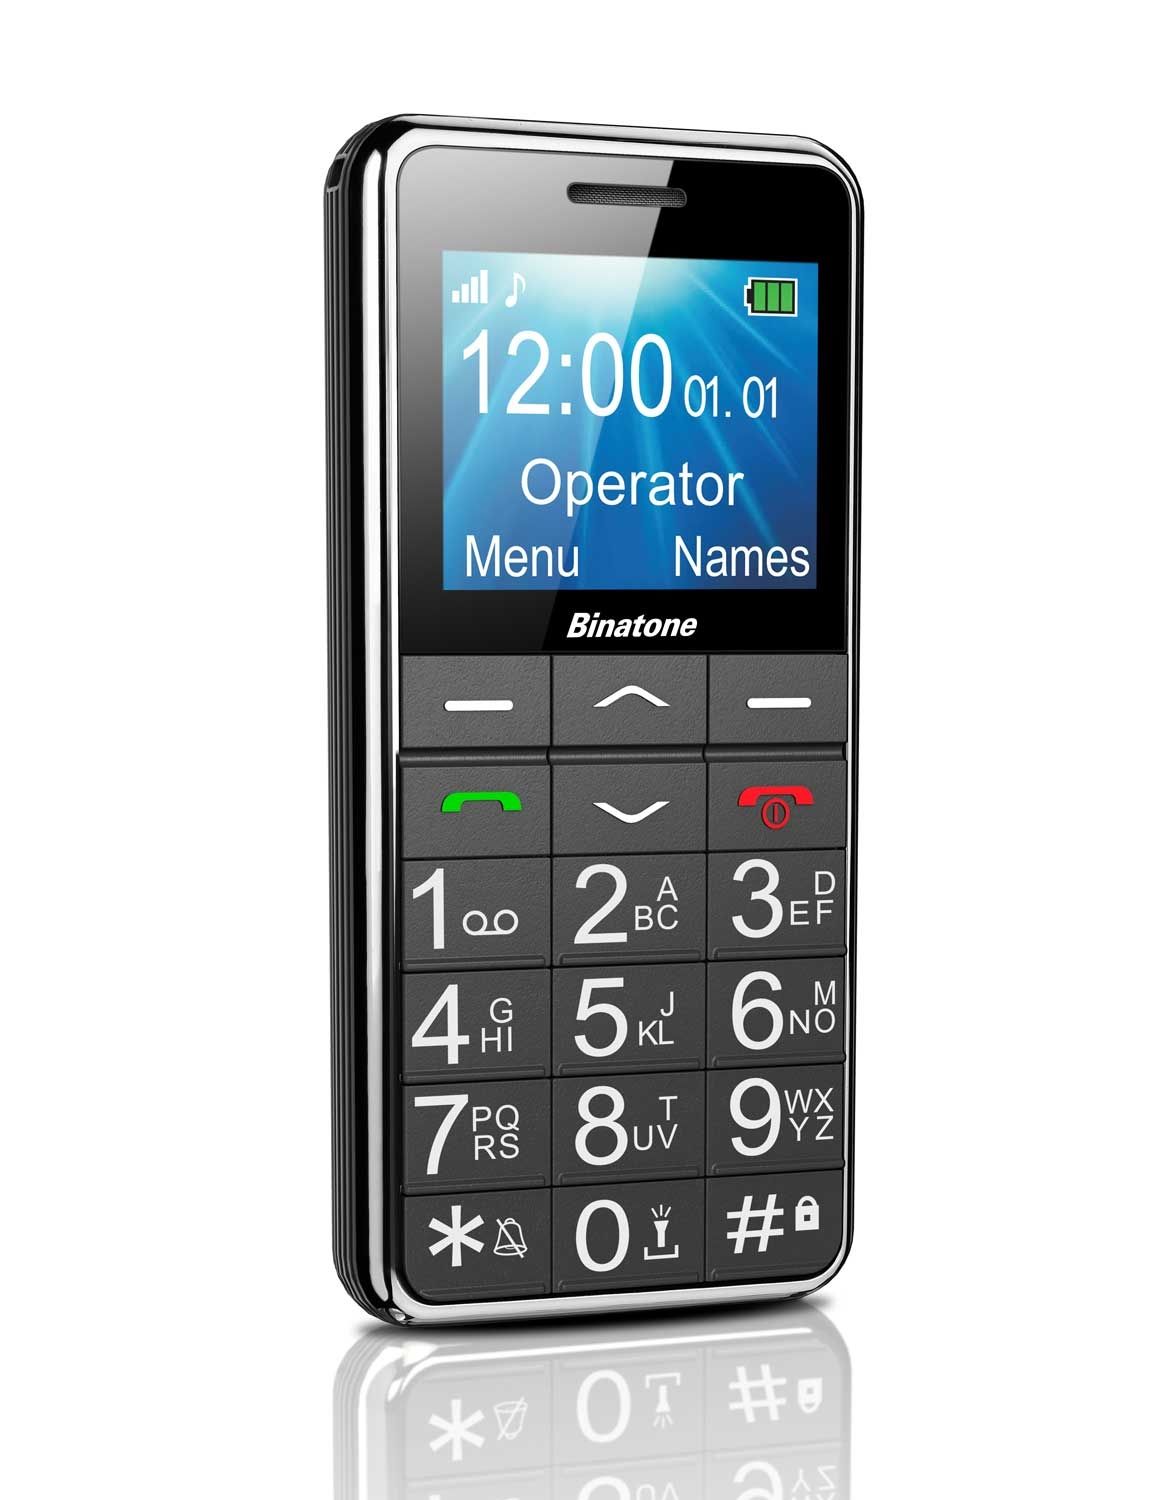 EasyToUse Deluxe BigButton Mobile Phone